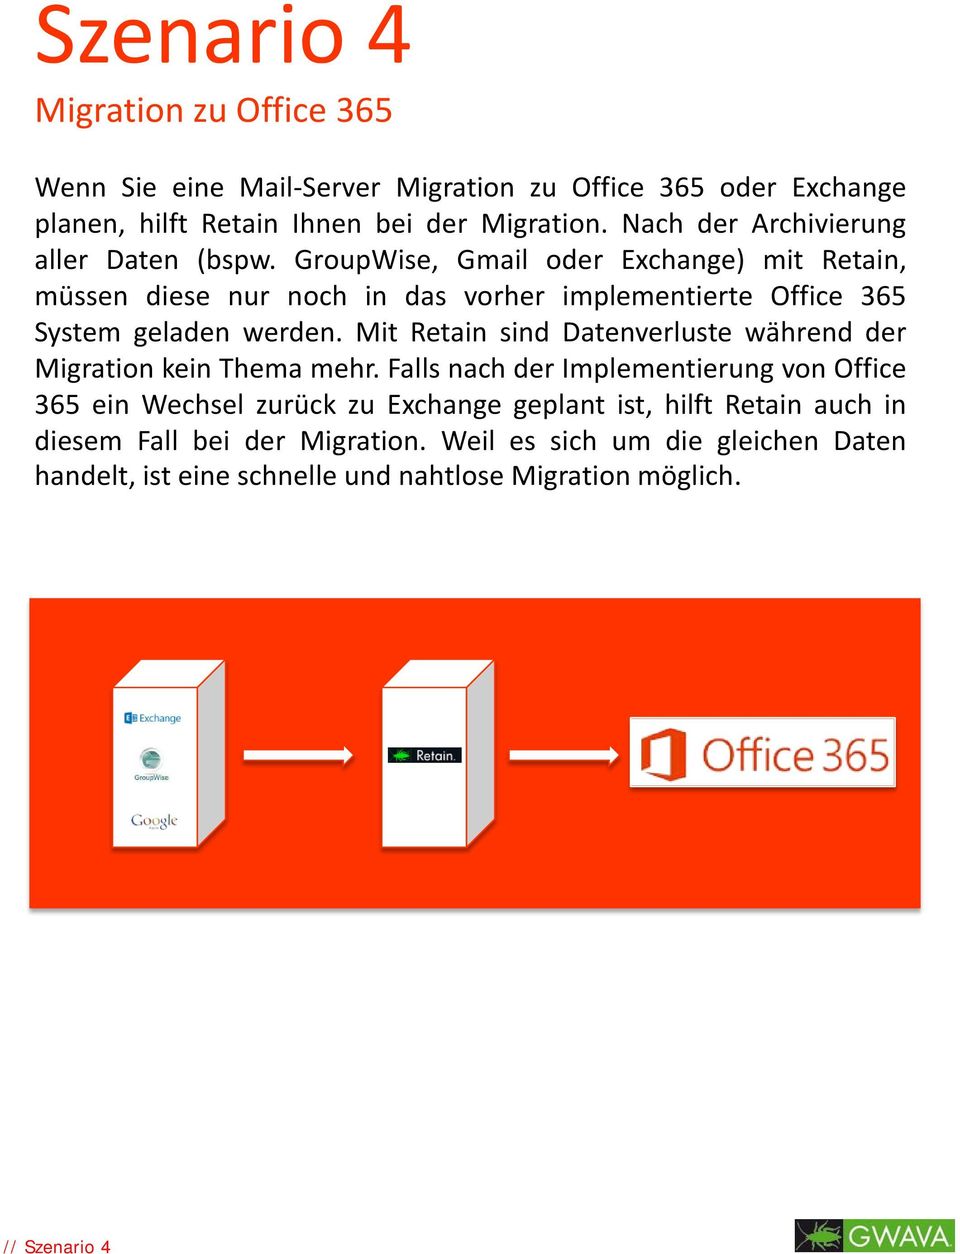 GroupWise, Gmail oder Exchange) mit Retain, müssen diese nur noch in das vorher implementierte Office 365 System geladen werden.